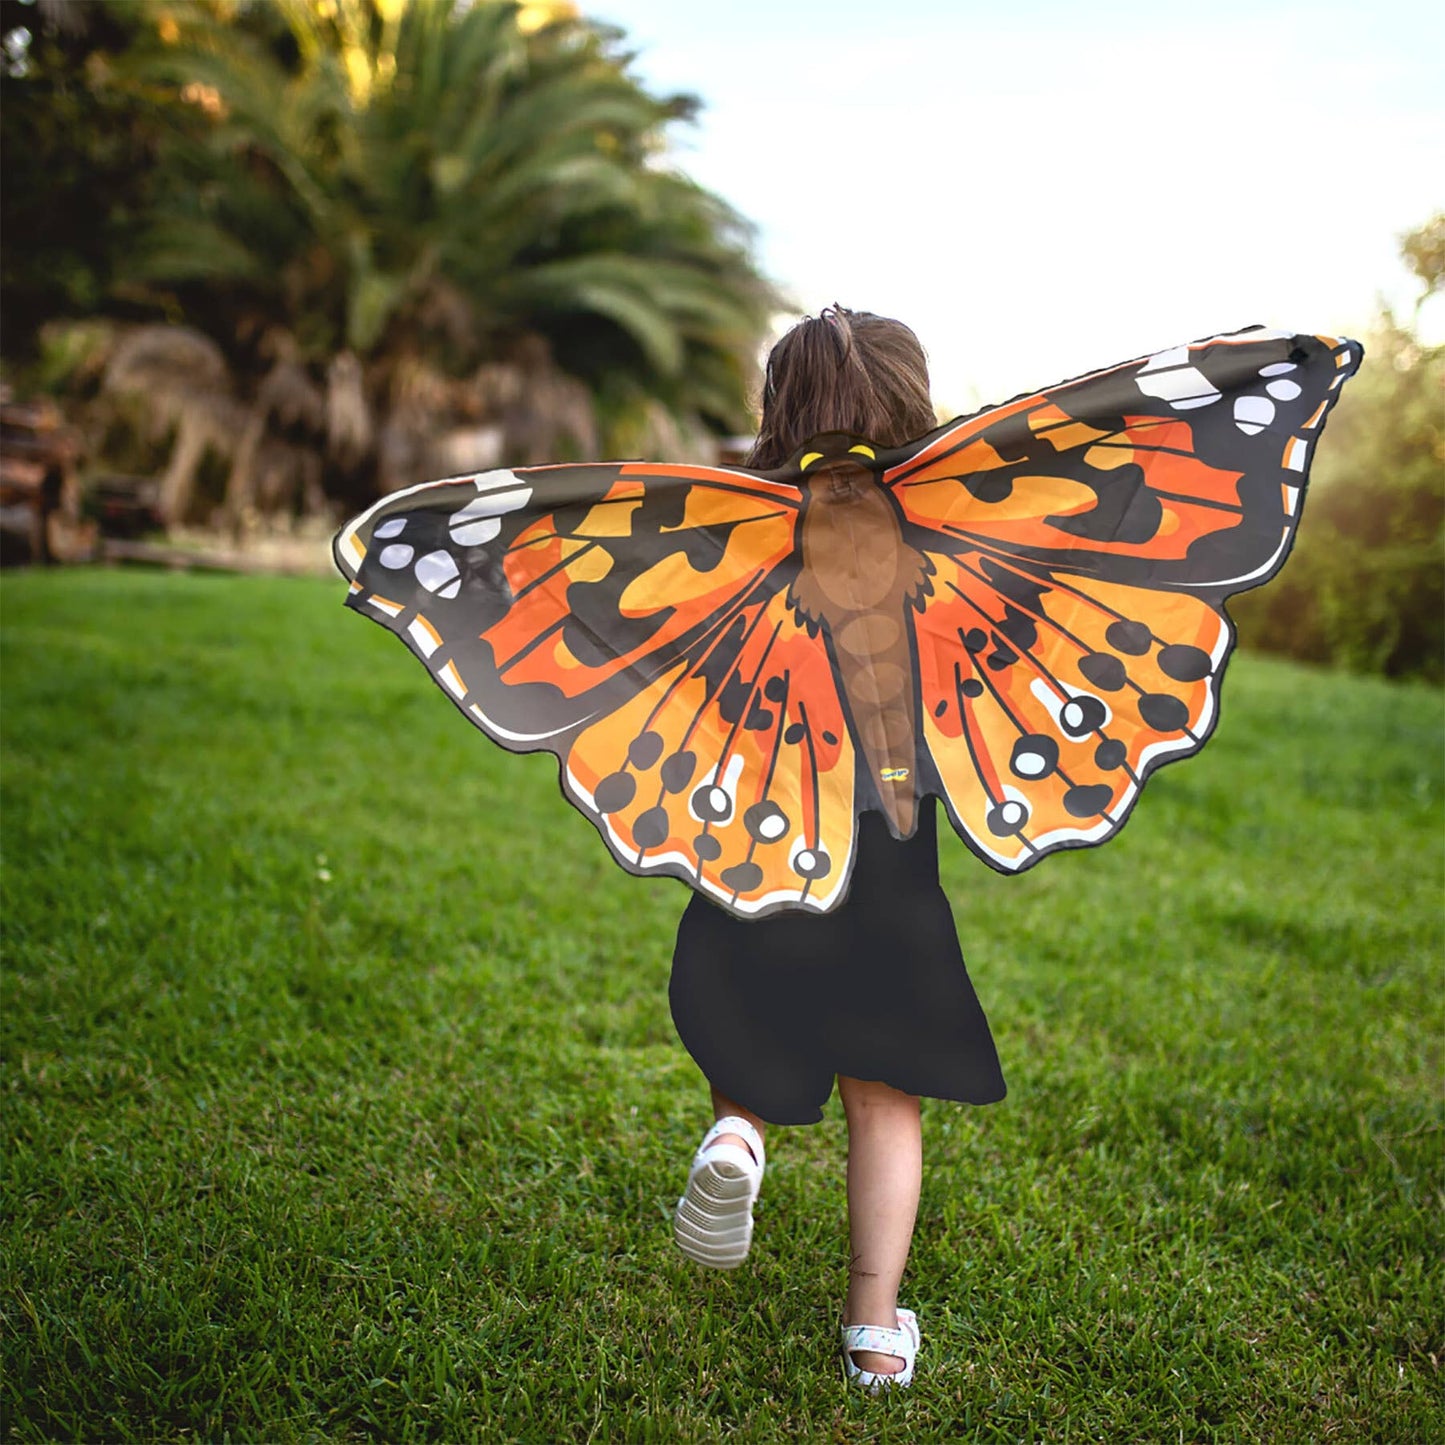 Dress-up Butterfly Wings